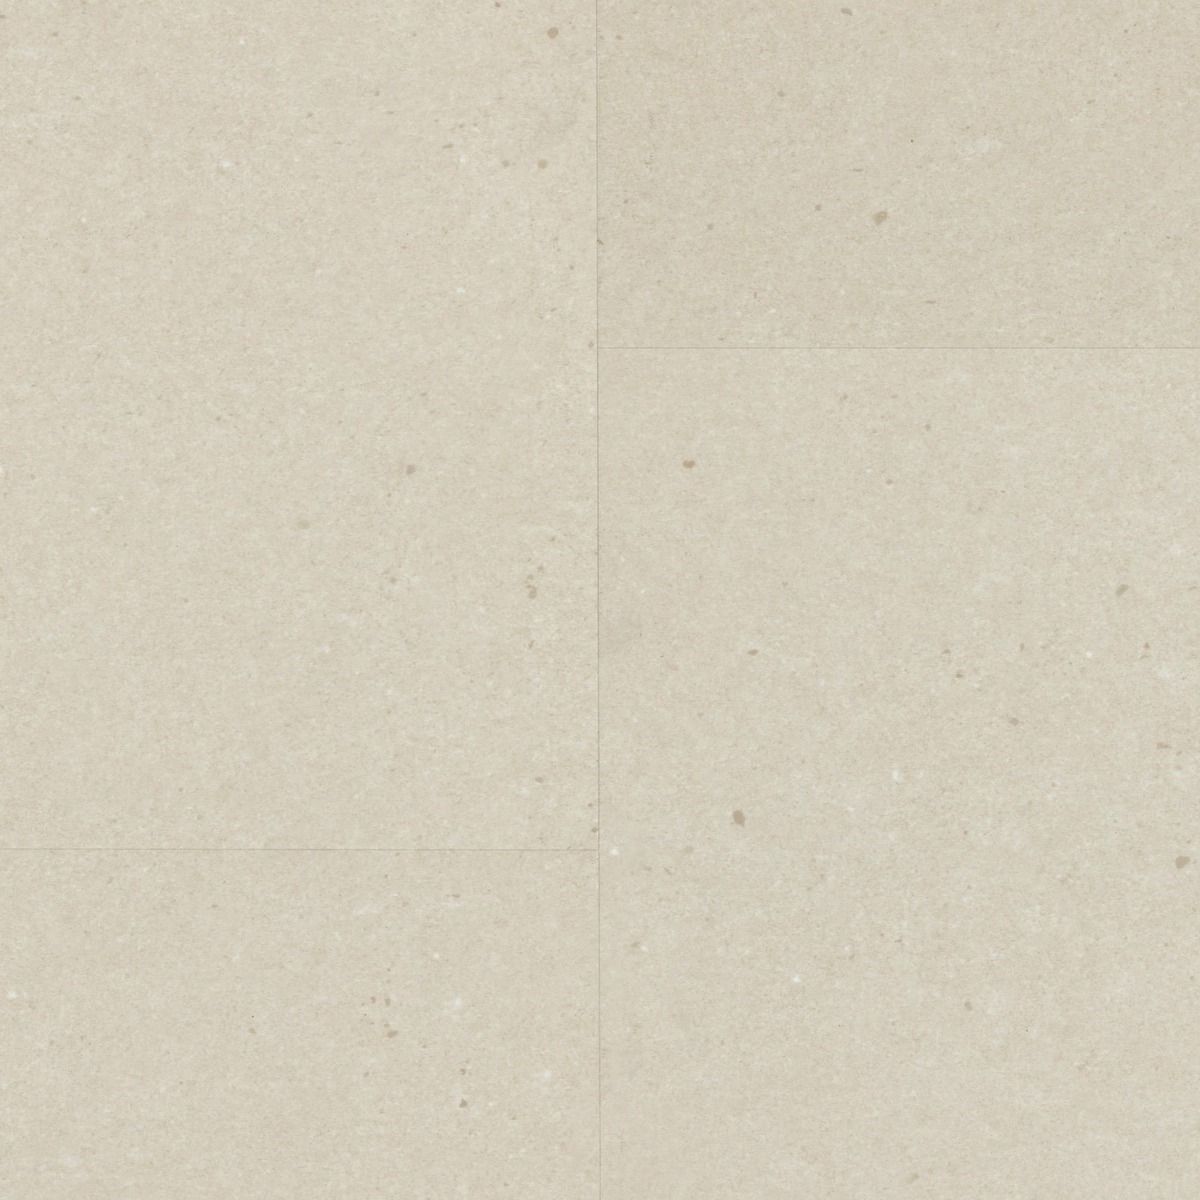 Vinylová podlaha Berry Alloc LIVE CL30 Vibrant stone dune 3,8 mm 60001903 (bal.1,870 m2) - Siko - koupelny - kuchyně